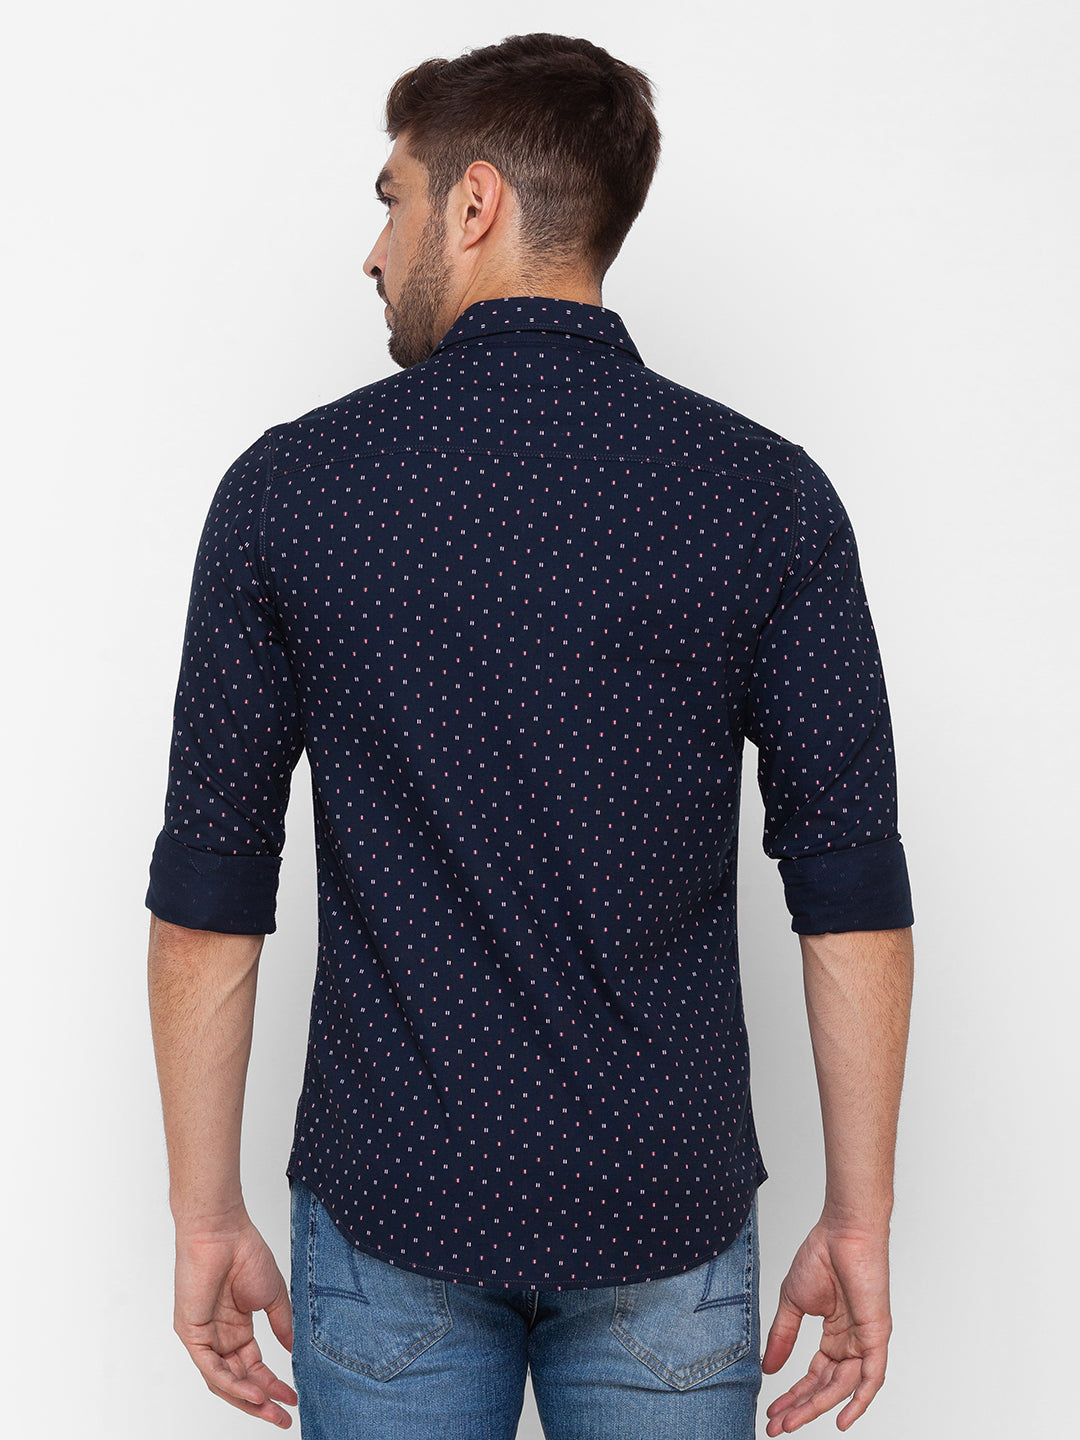 Spykar Navy Blue Cotton Full Sleeve Printed Shirt For Men